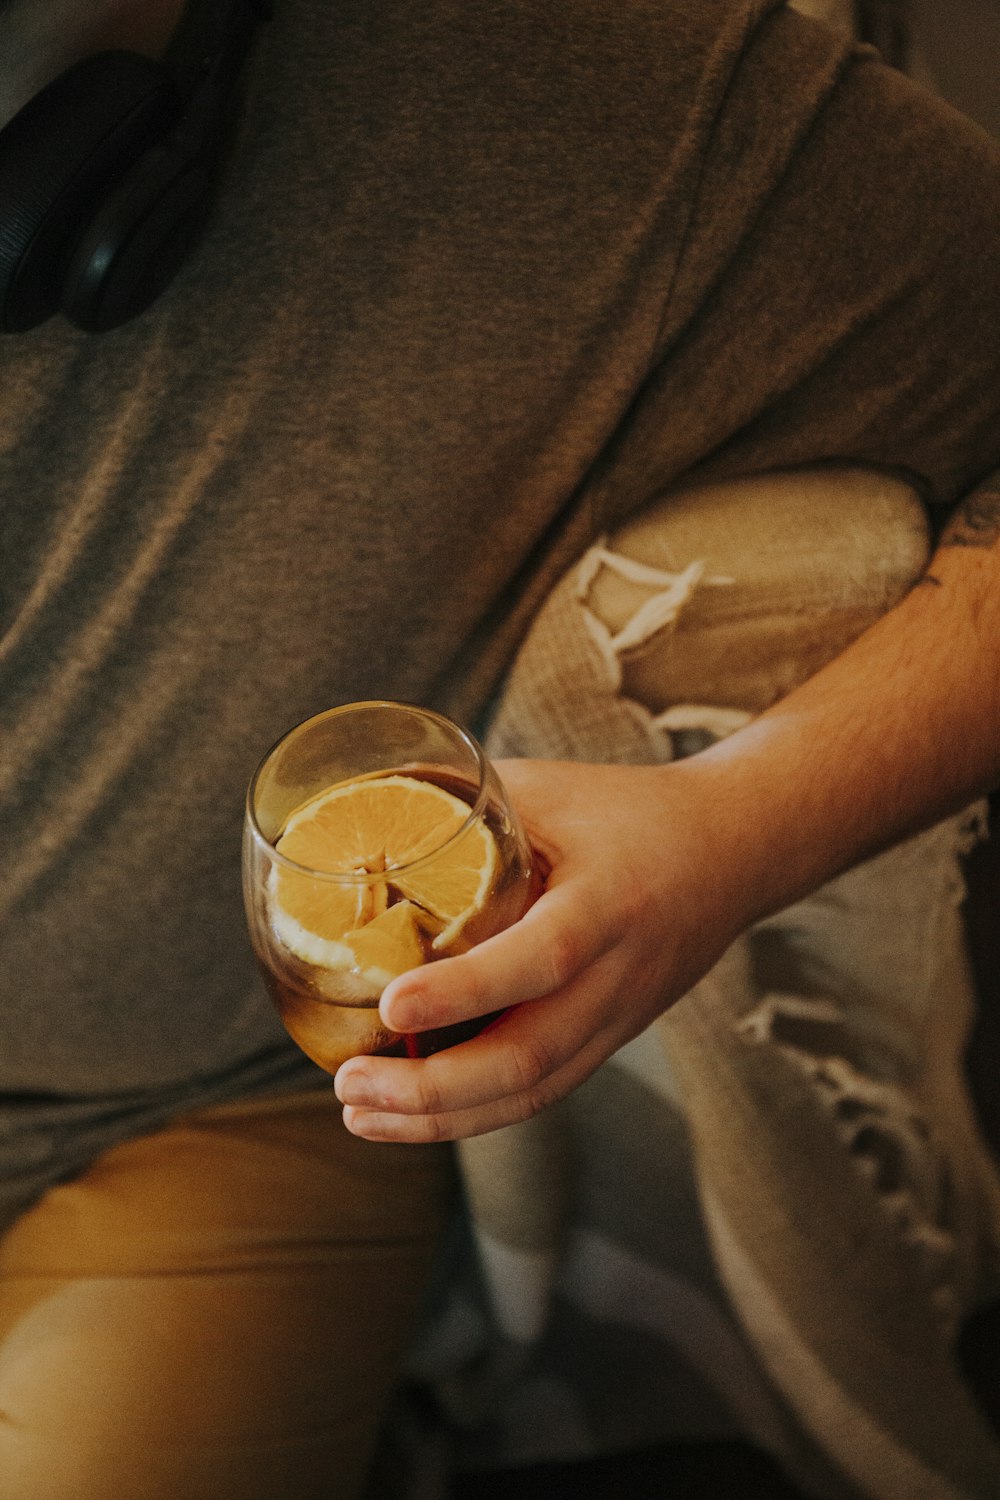 갈색 액체가 든 투명한 음료수 잔을 들고 있는 사람